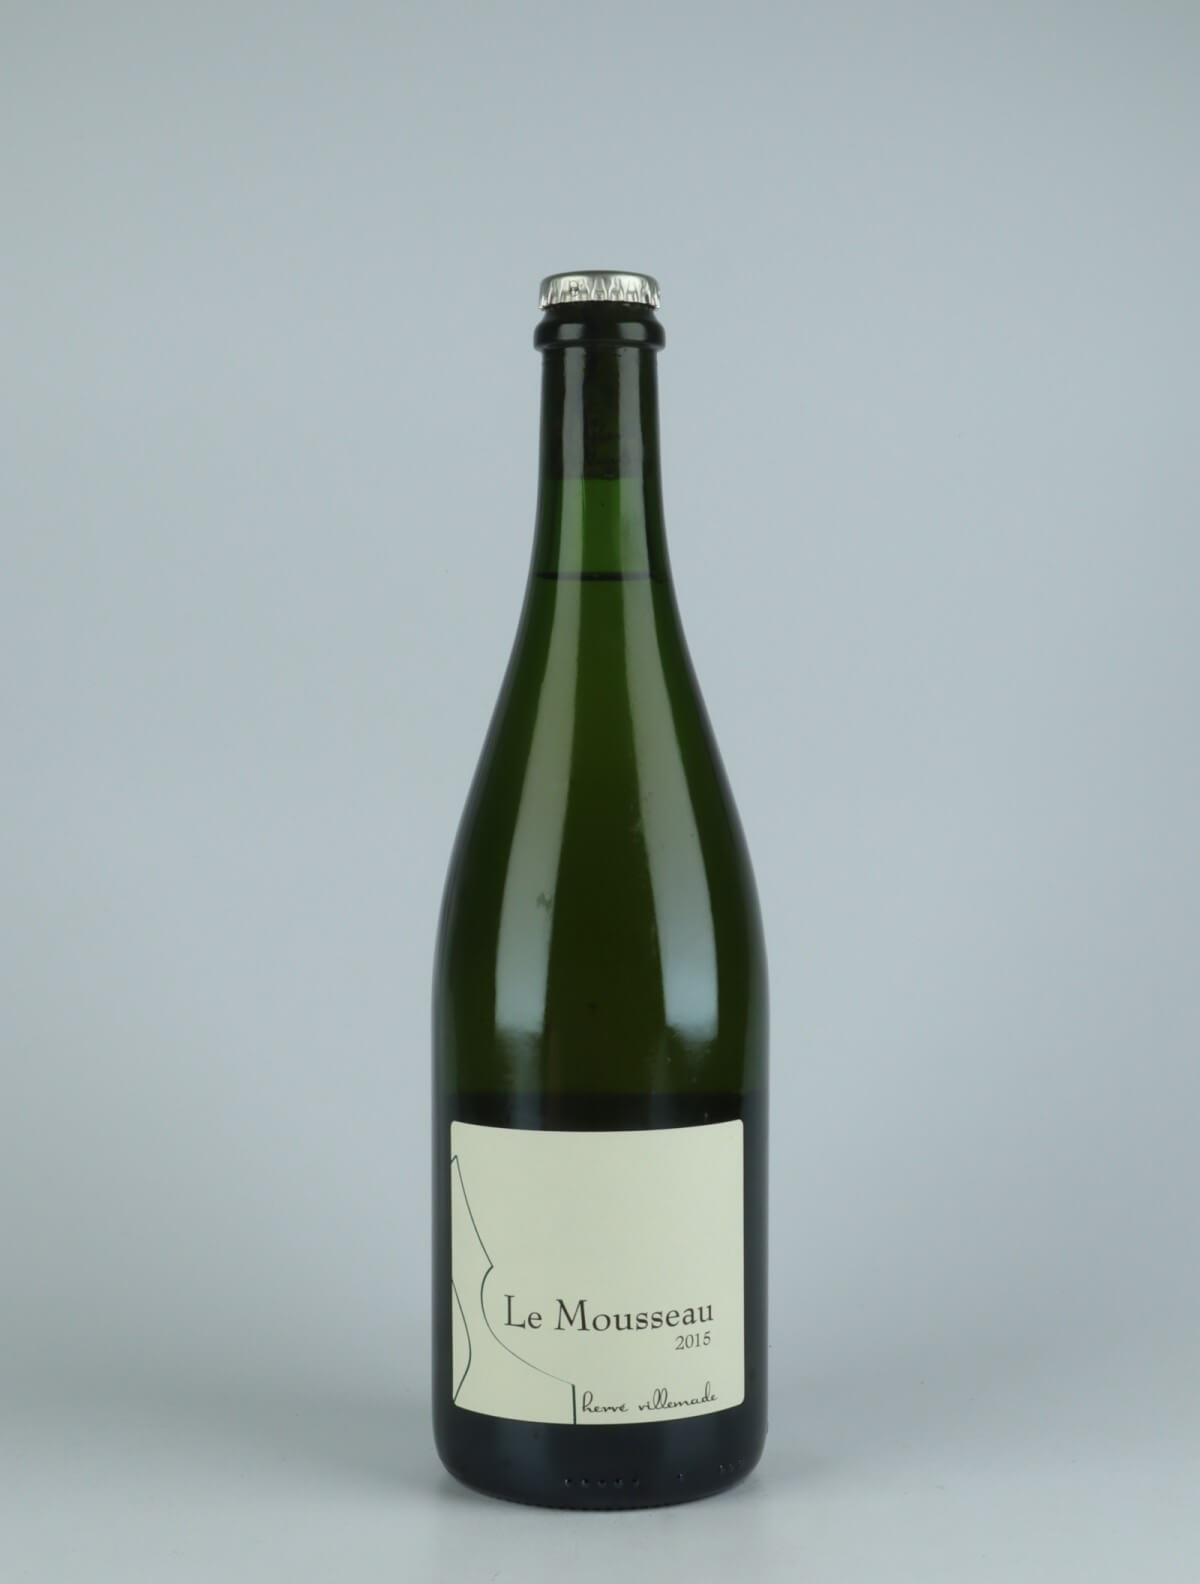 En flaske 2015 Chenin Blanc - Le Mousseau Hvidvin fra Hervé Villemade, Loire i Frankrig